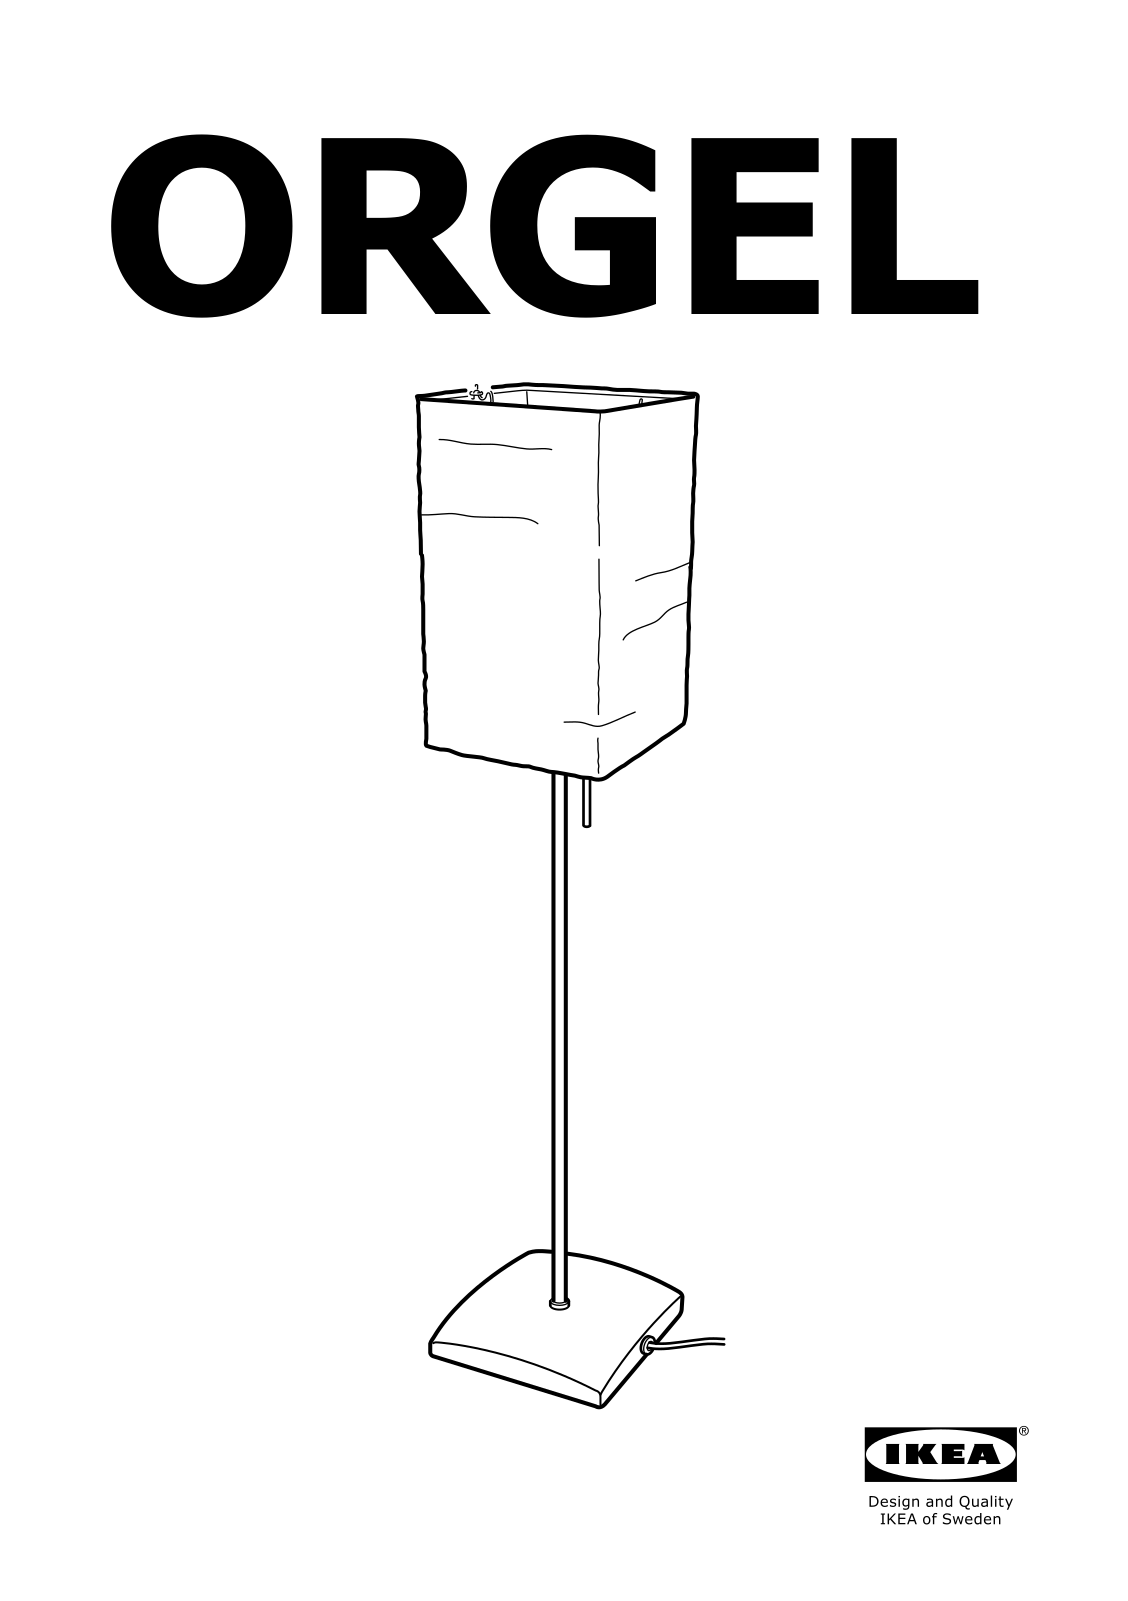 IKEA ORGEL User Manual